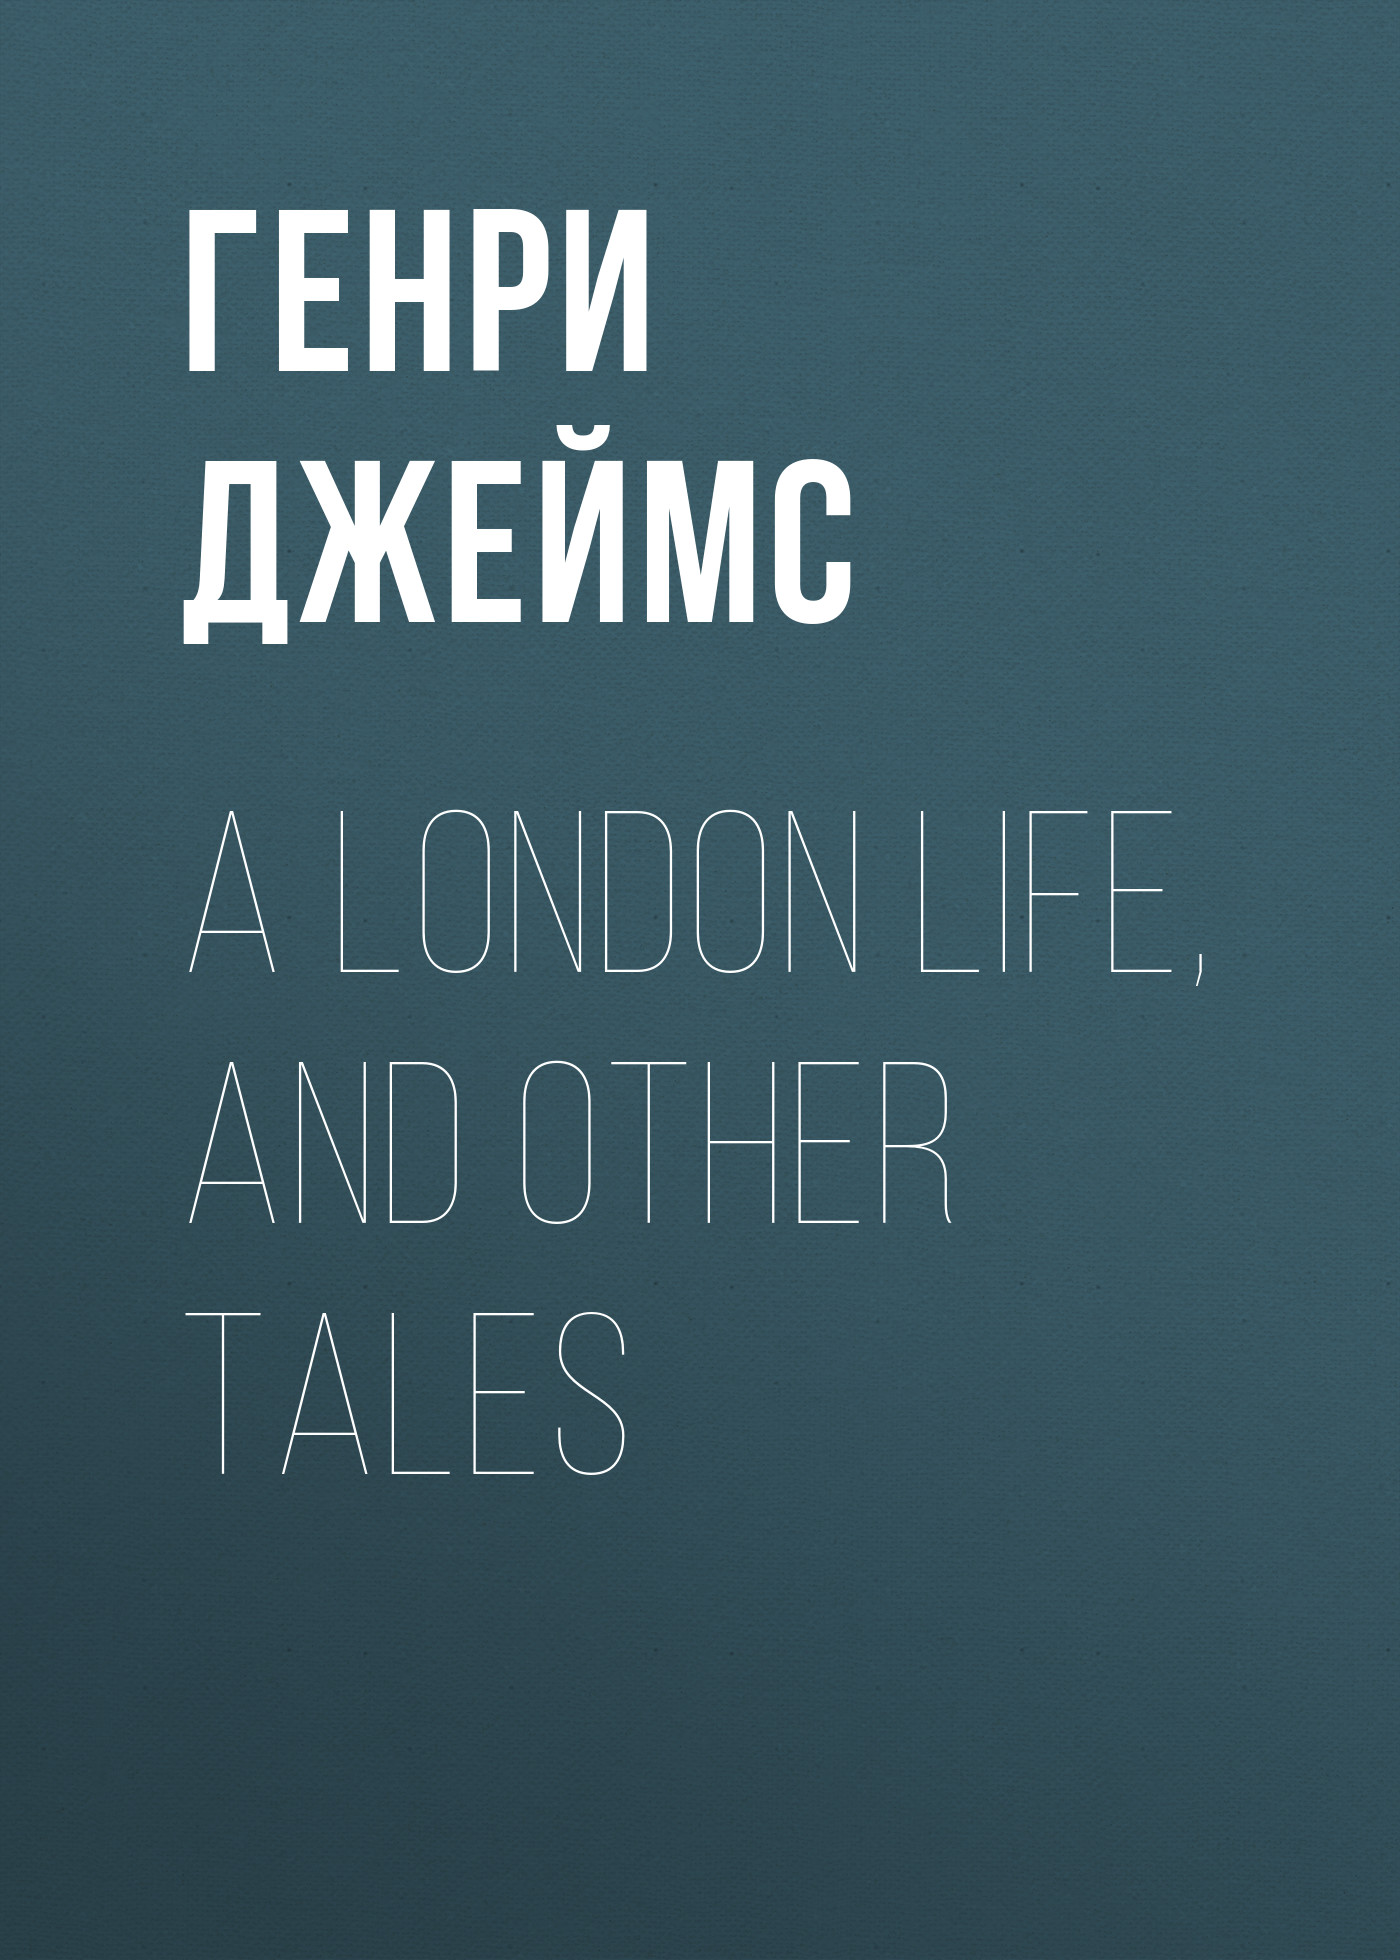 Книга A London Life, and Other Tales из серии , созданная Генри Джеймс, может относится к жанру Зарубежная старинная литература, Зарубежная классика, Зарубежная фантастика. Стоимость электронной книги A London Life, and Other Tales с идентификатором 34839582 составляет 0 руб.